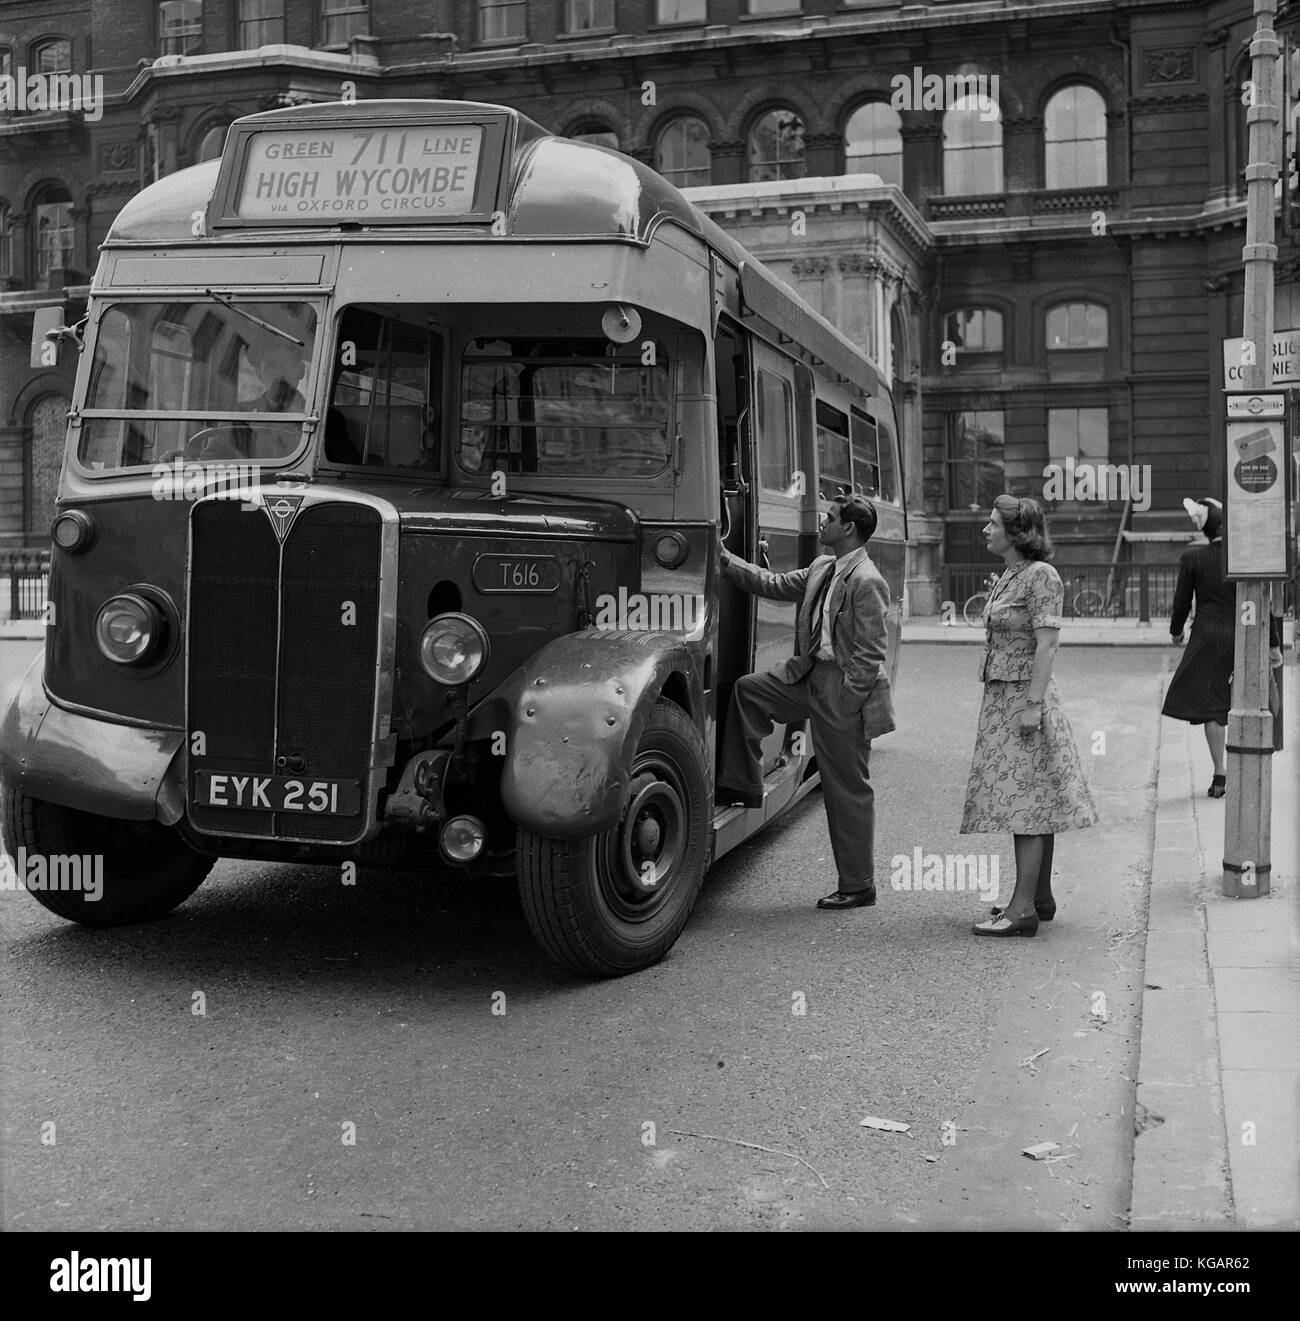 1950s, photo historique montrant un homme d'outre-mer et une dame derrière lui à Charing Cross, dans le centre de Londres, attendant de monter à bord du bus Green Line 711, via Oxford Circus, à la ville de comté de High Wycombe à Buckinghamshire, Angleterre, Royaume-Uni. Banque D'Images